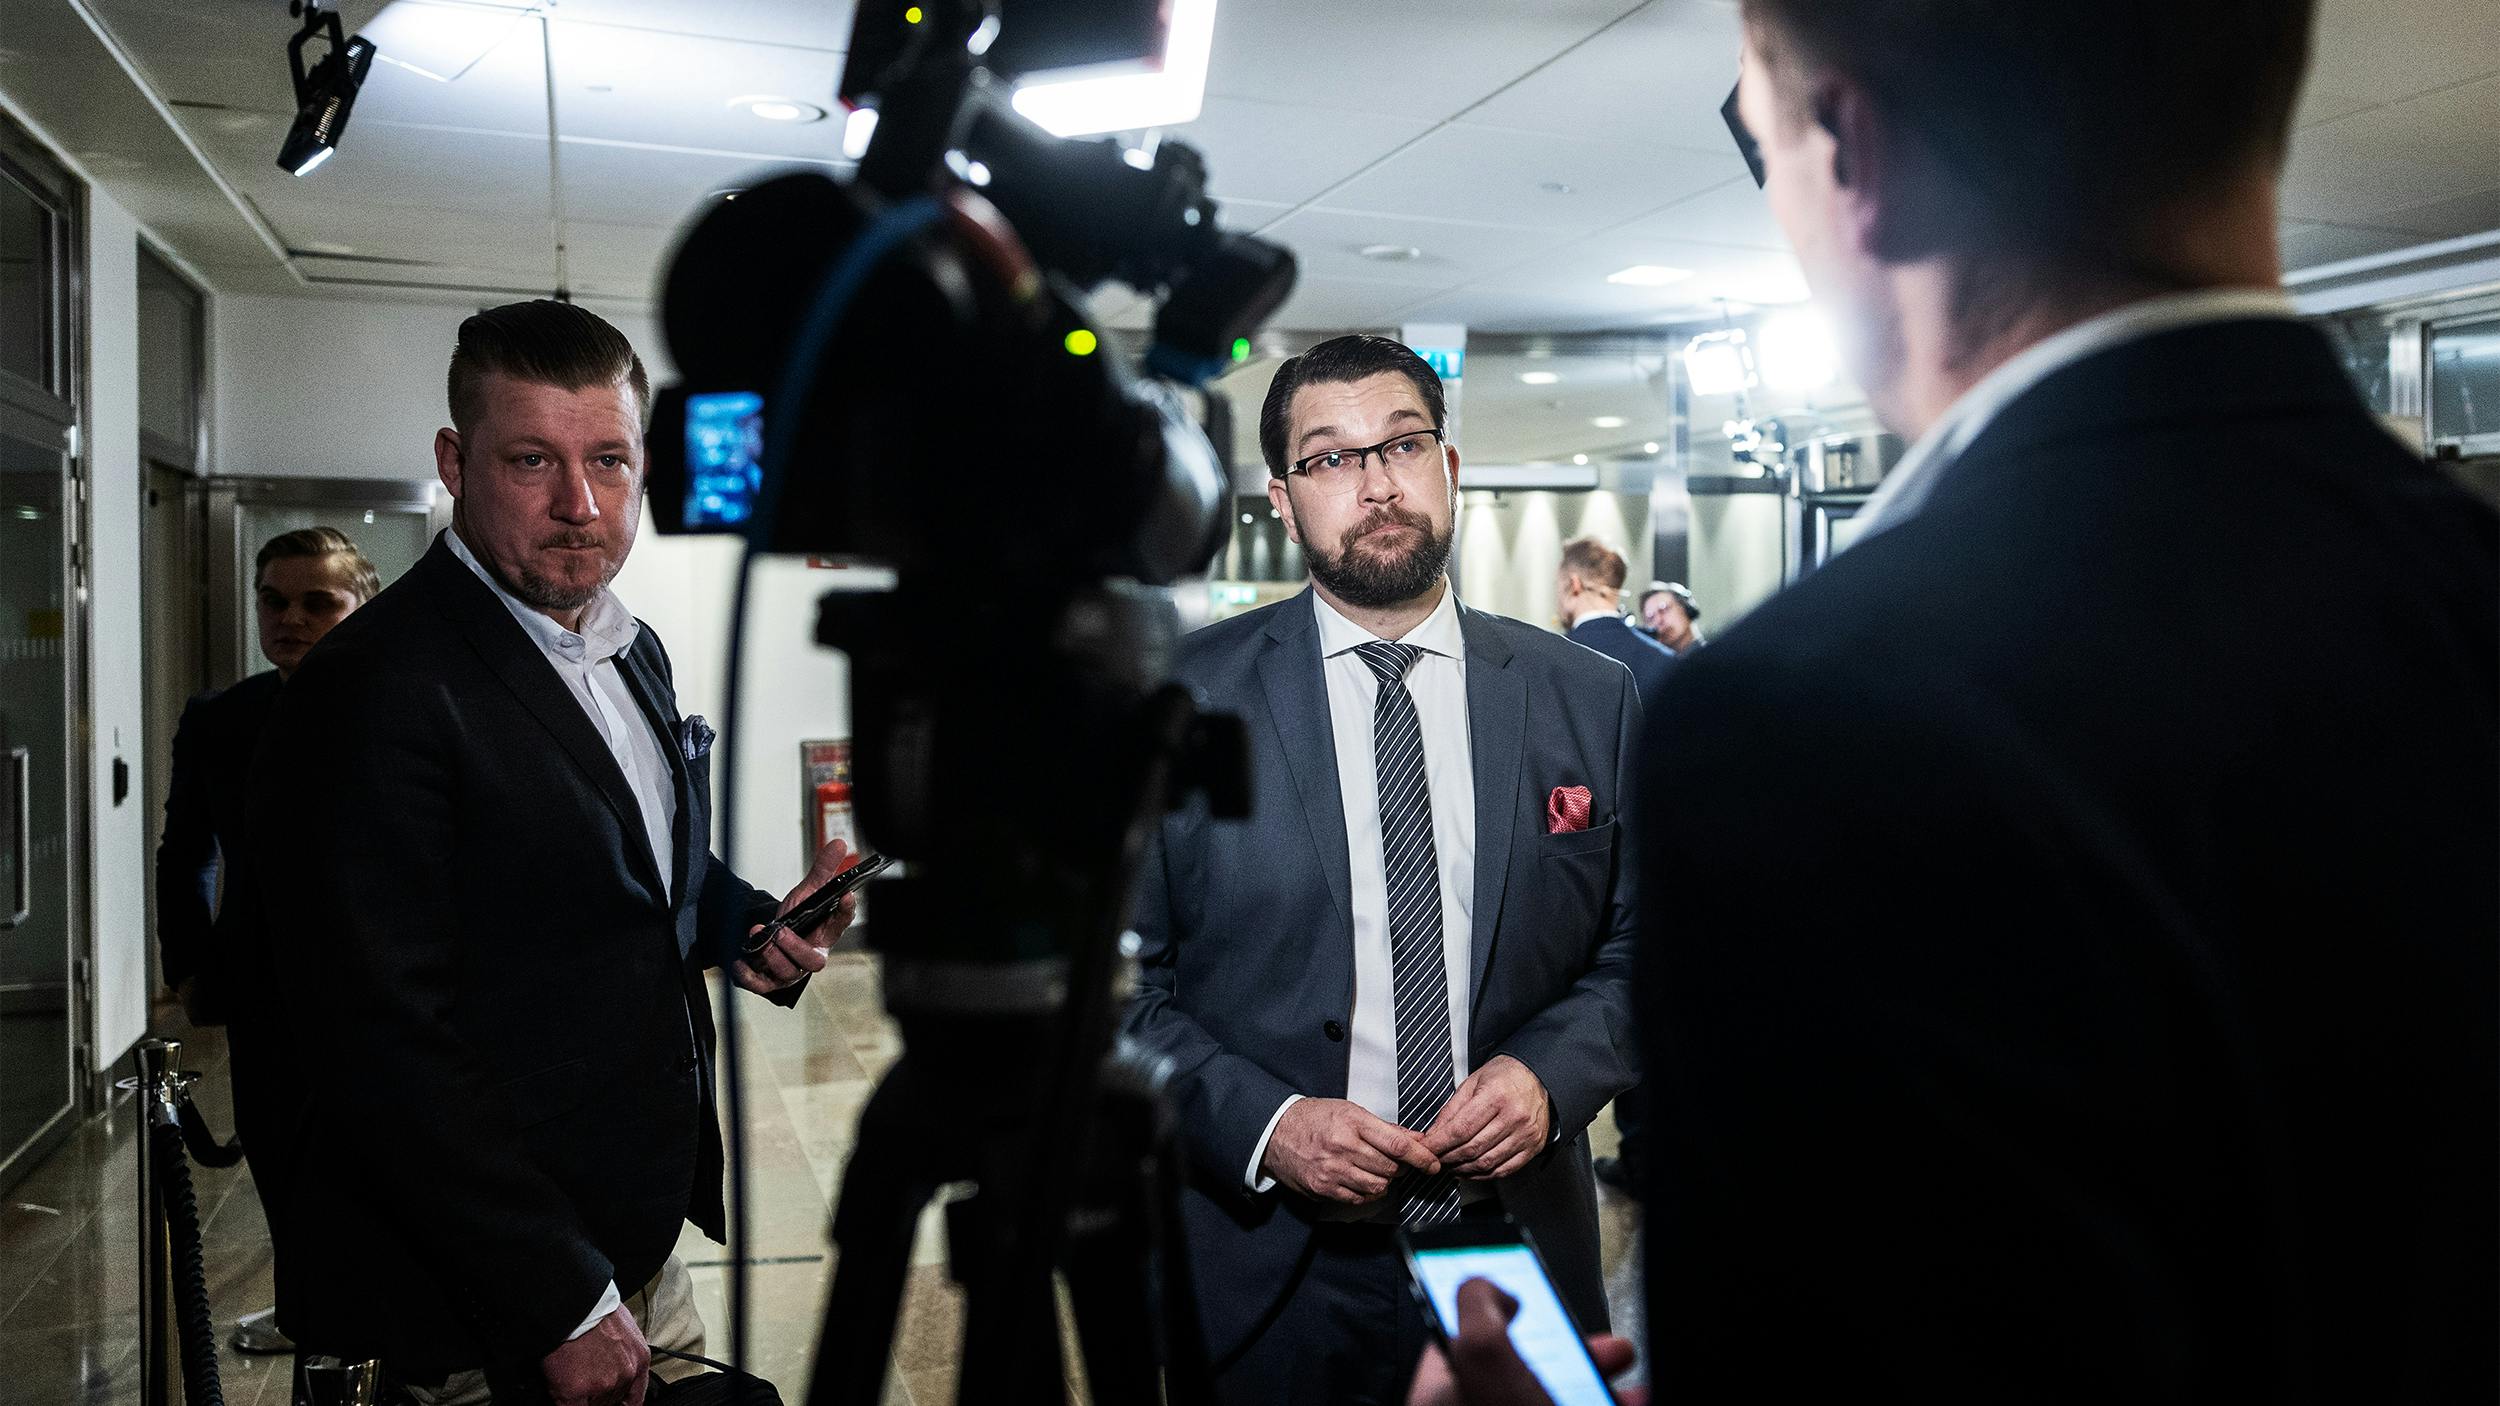 Der Chef der schwedischen Rechtsaußen-Partei, Jimmie Akesson, wird interviewt. Eine Fernsehkamera filmt ihn.